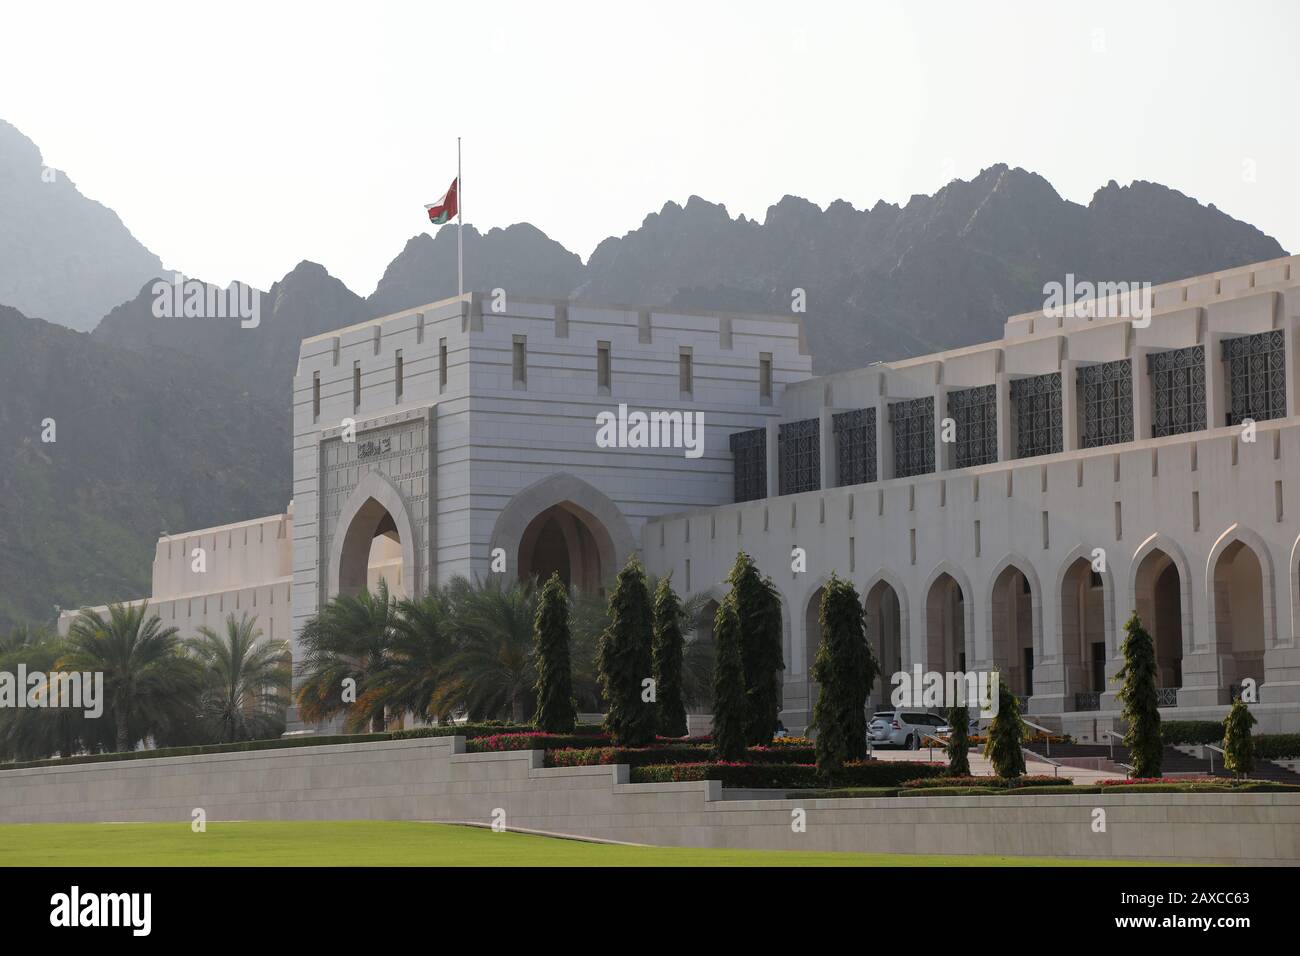 Muscat / Oman – 11 février 2020 : le Conseil d’Oman (parlement) dans le district d’Al Bustan, la capitale du pays, Mascate Banque D'Images